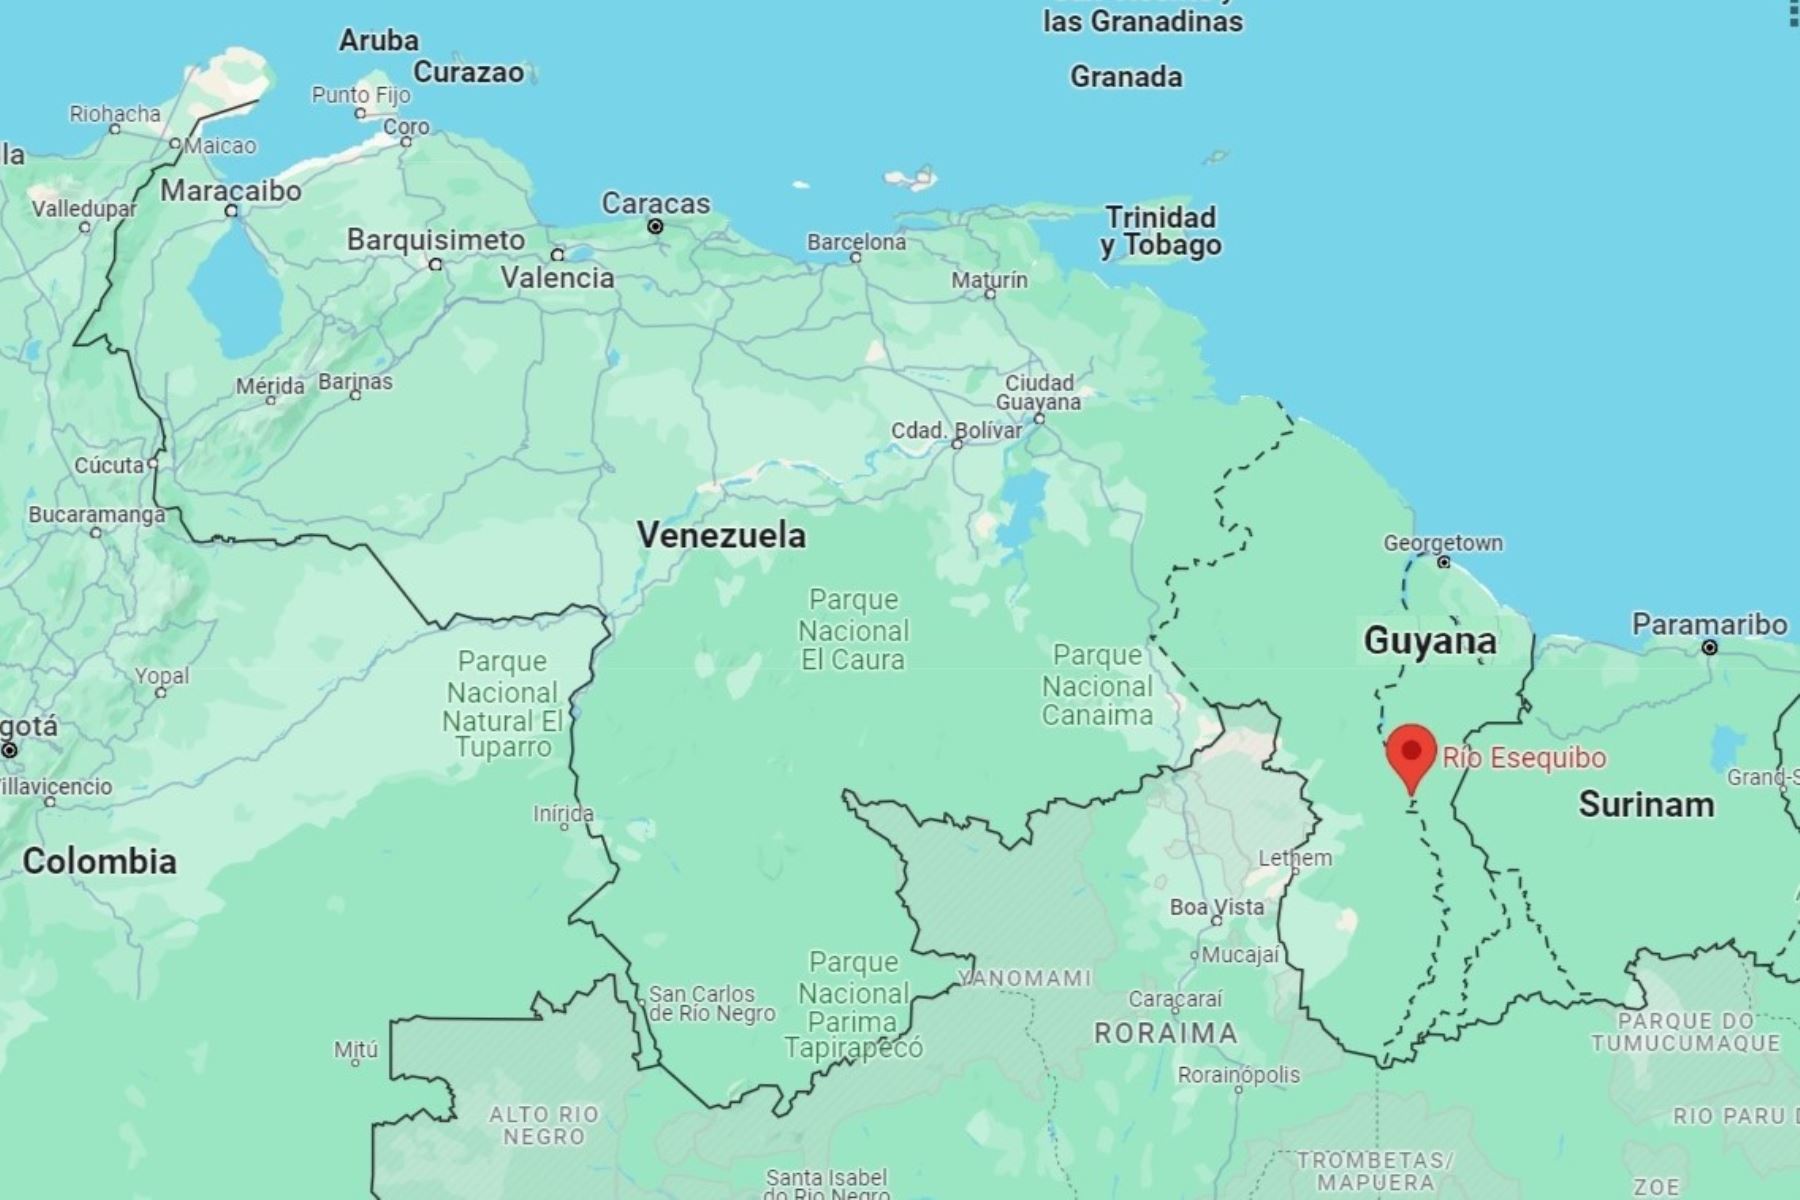 Sección de mapa de Sudamérica que muestra a Venezuela y Guyana. Imagen: Google Maps/Internet.